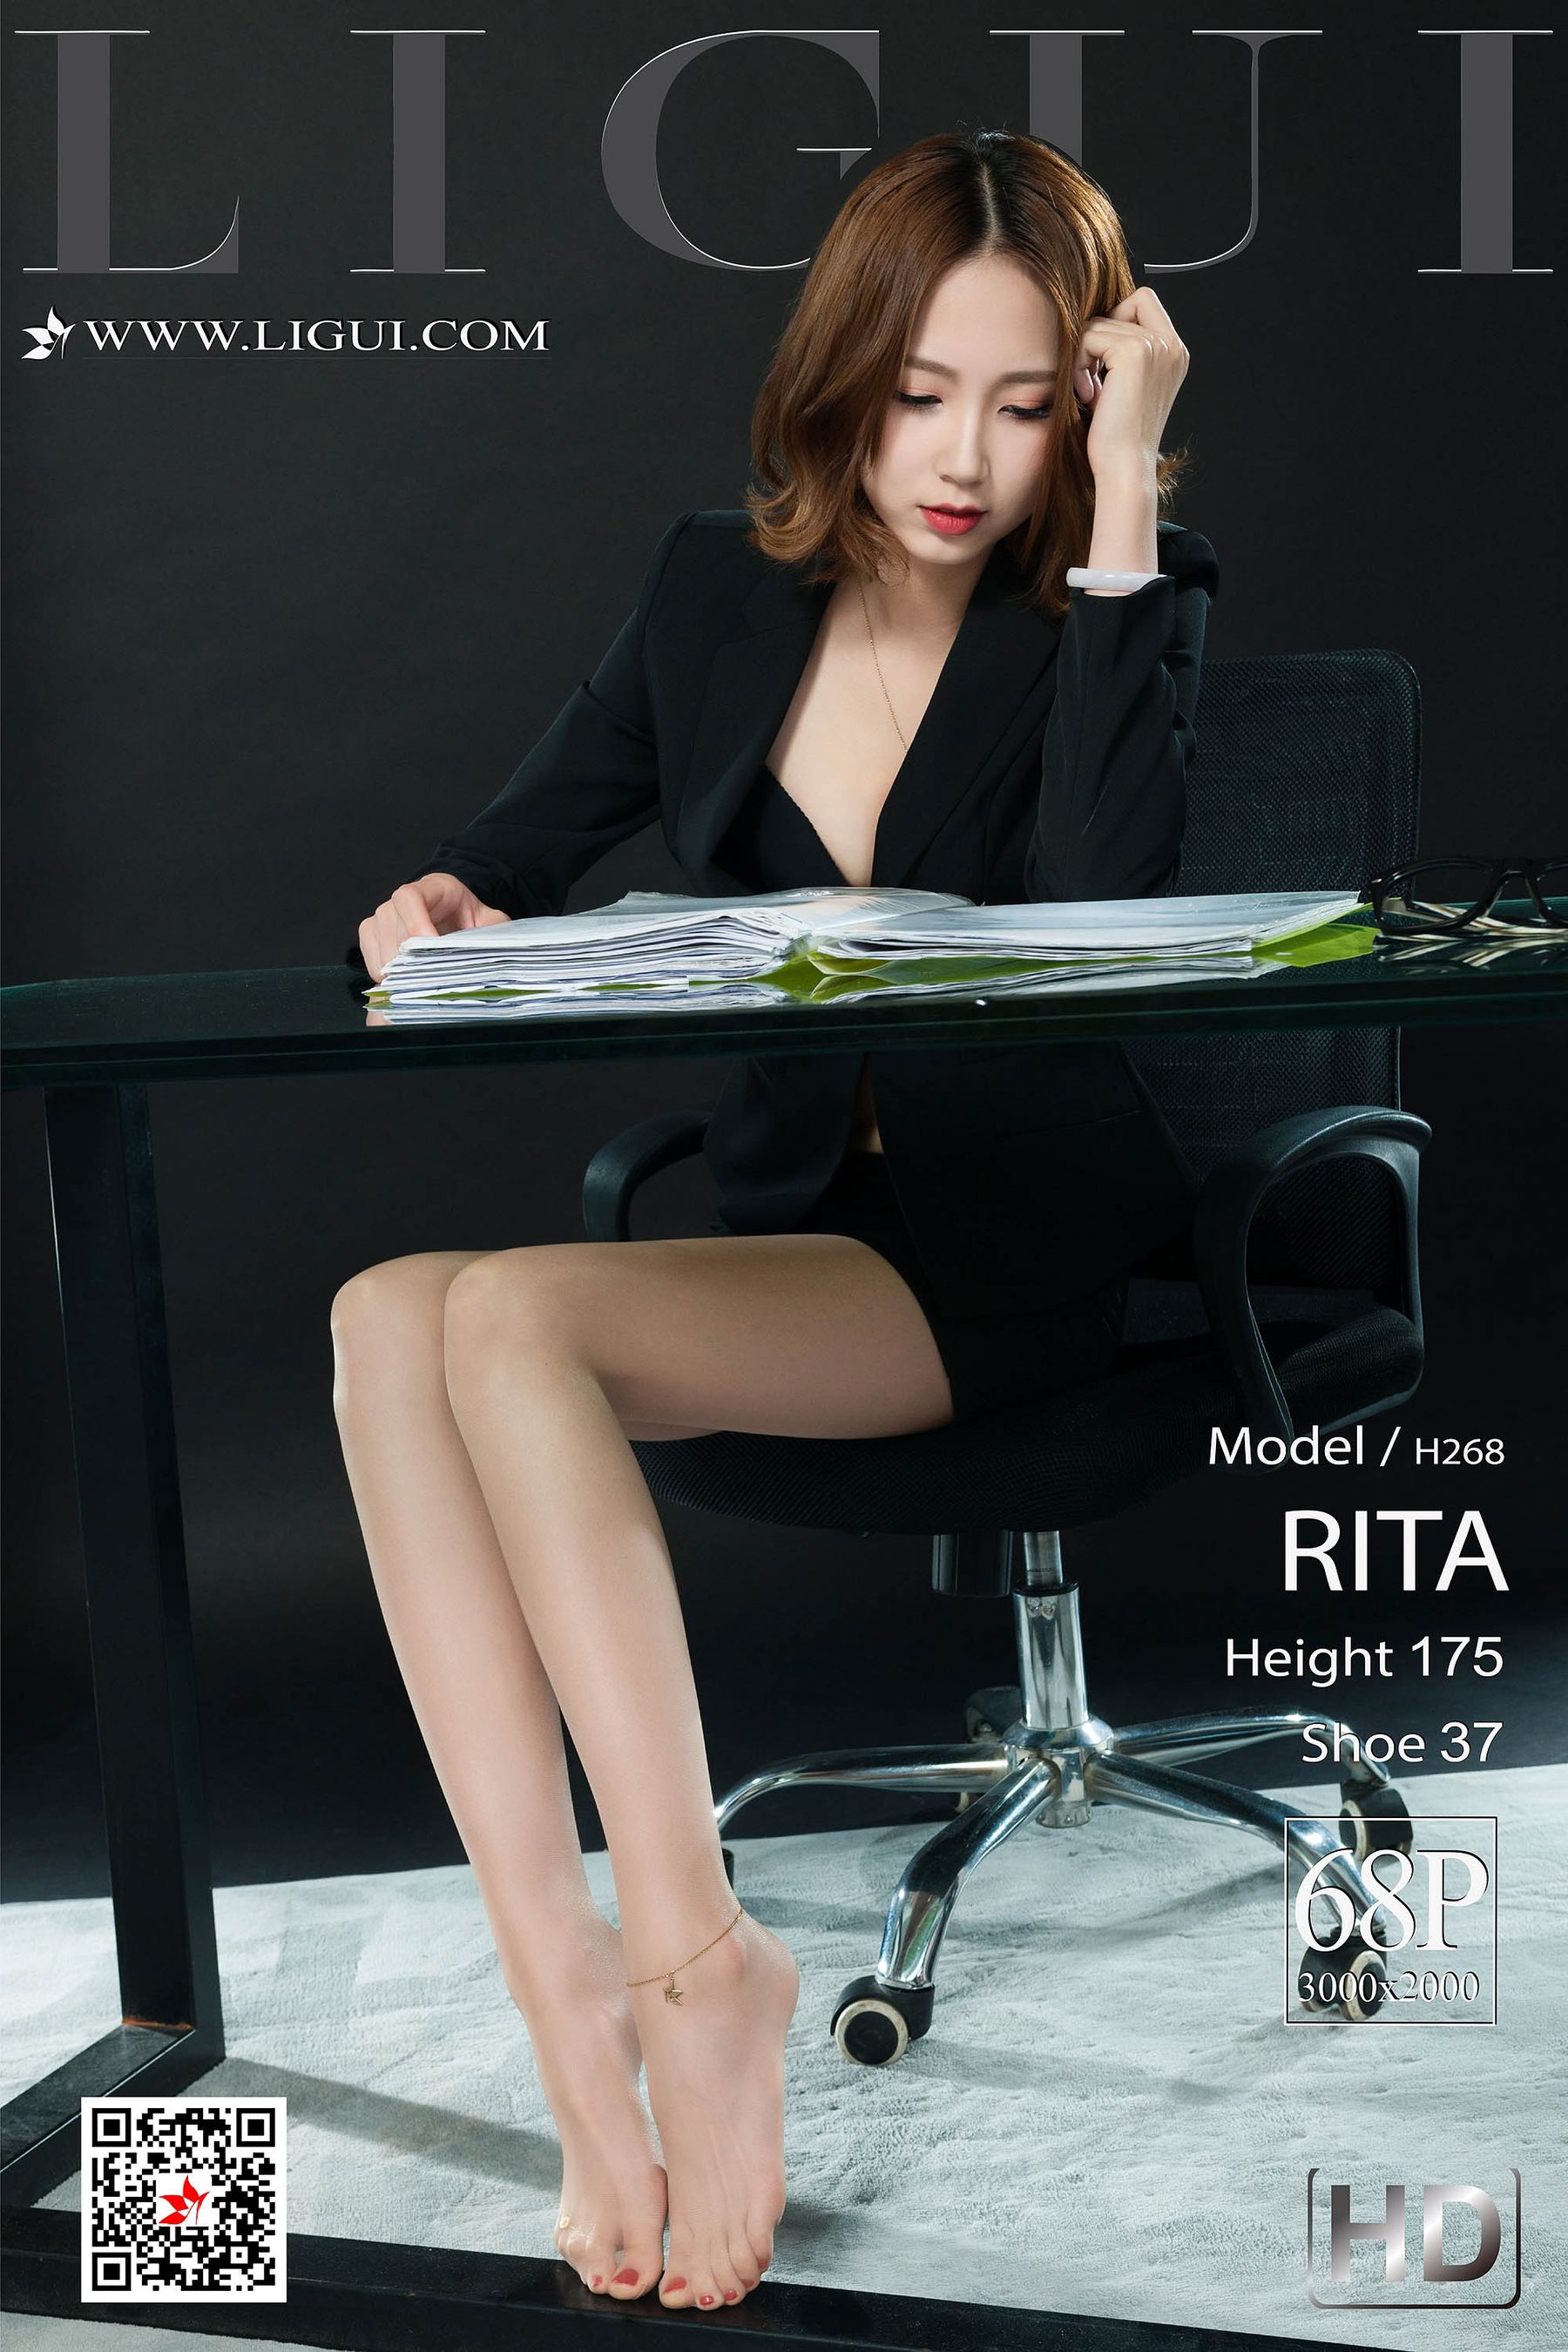 [丽柜LiGui] 网络丽人 Model RITA教官趴双腿吸核花蜜水